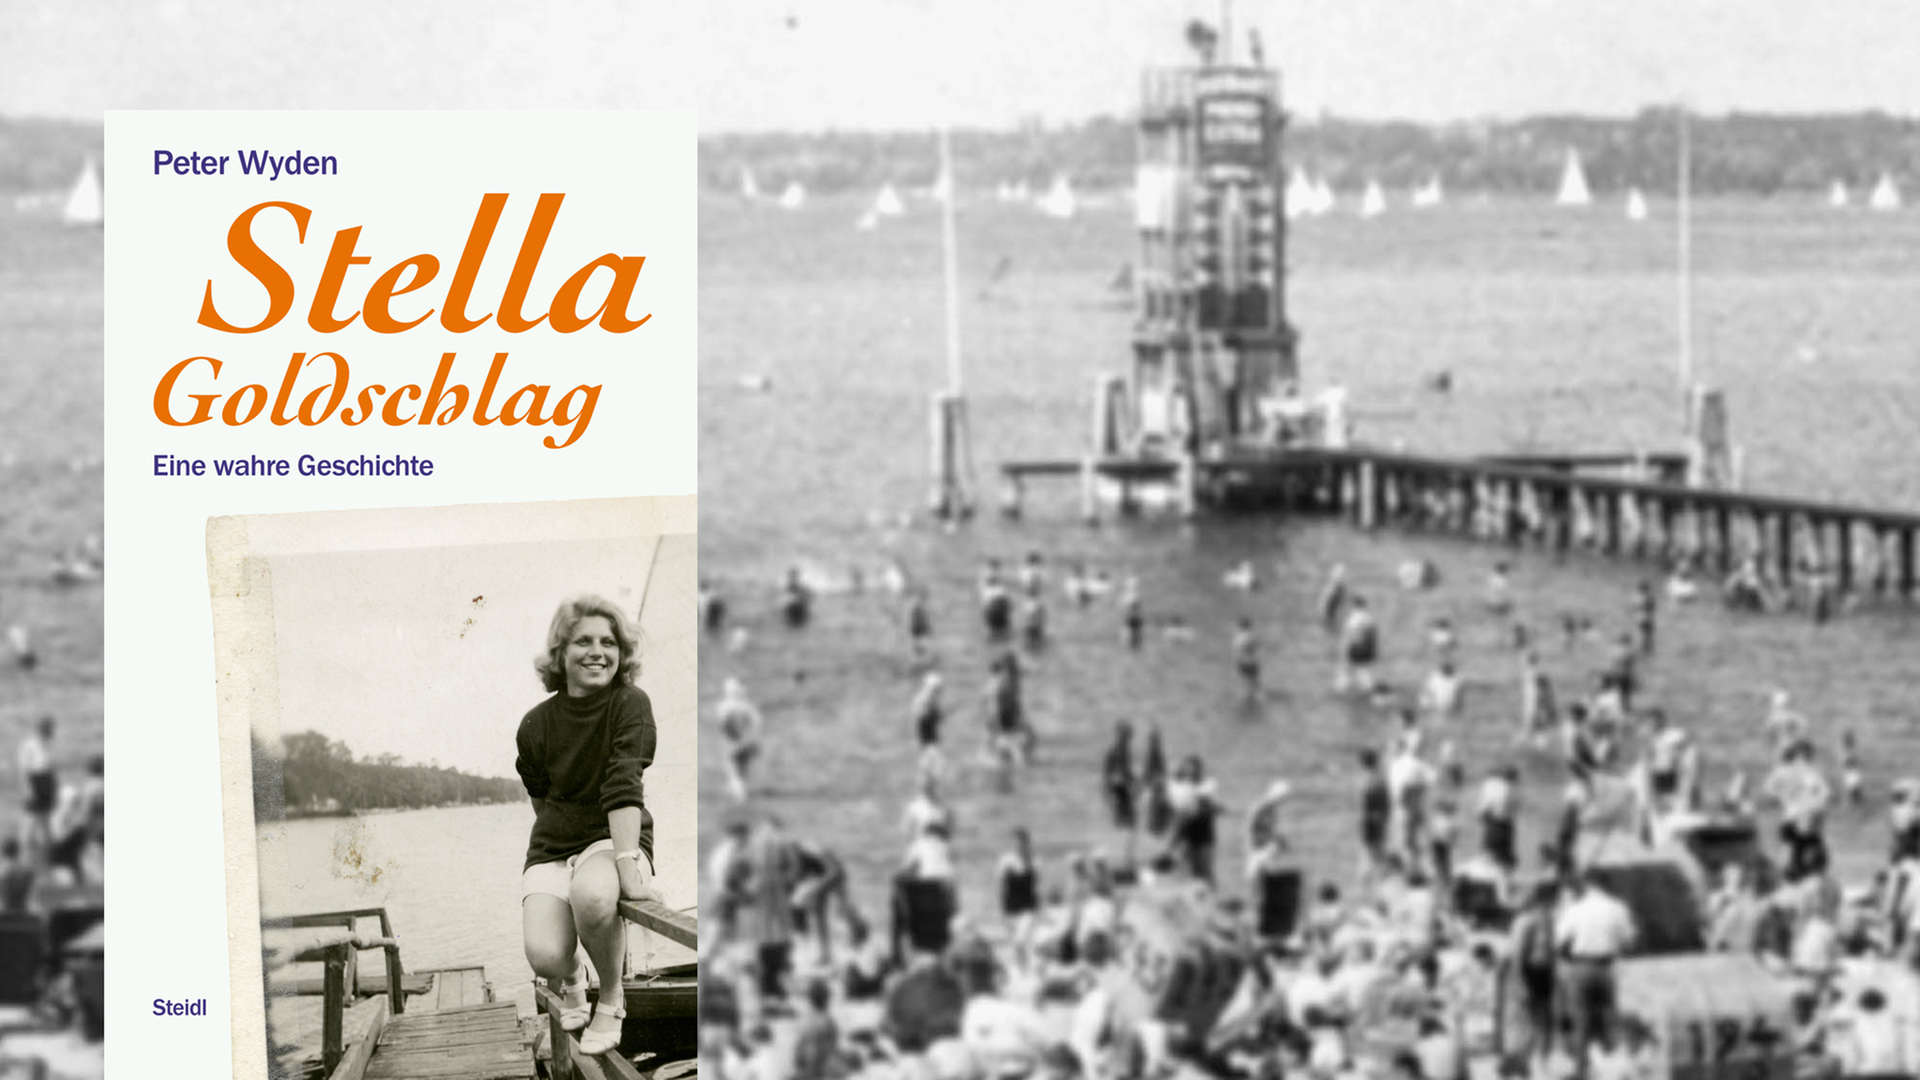 Cover von Peter Wydens "Stella Goldschlag", im Hintergrund sind Badegäste im Berliner Strandbad Wannsee um 1935 zu sehen